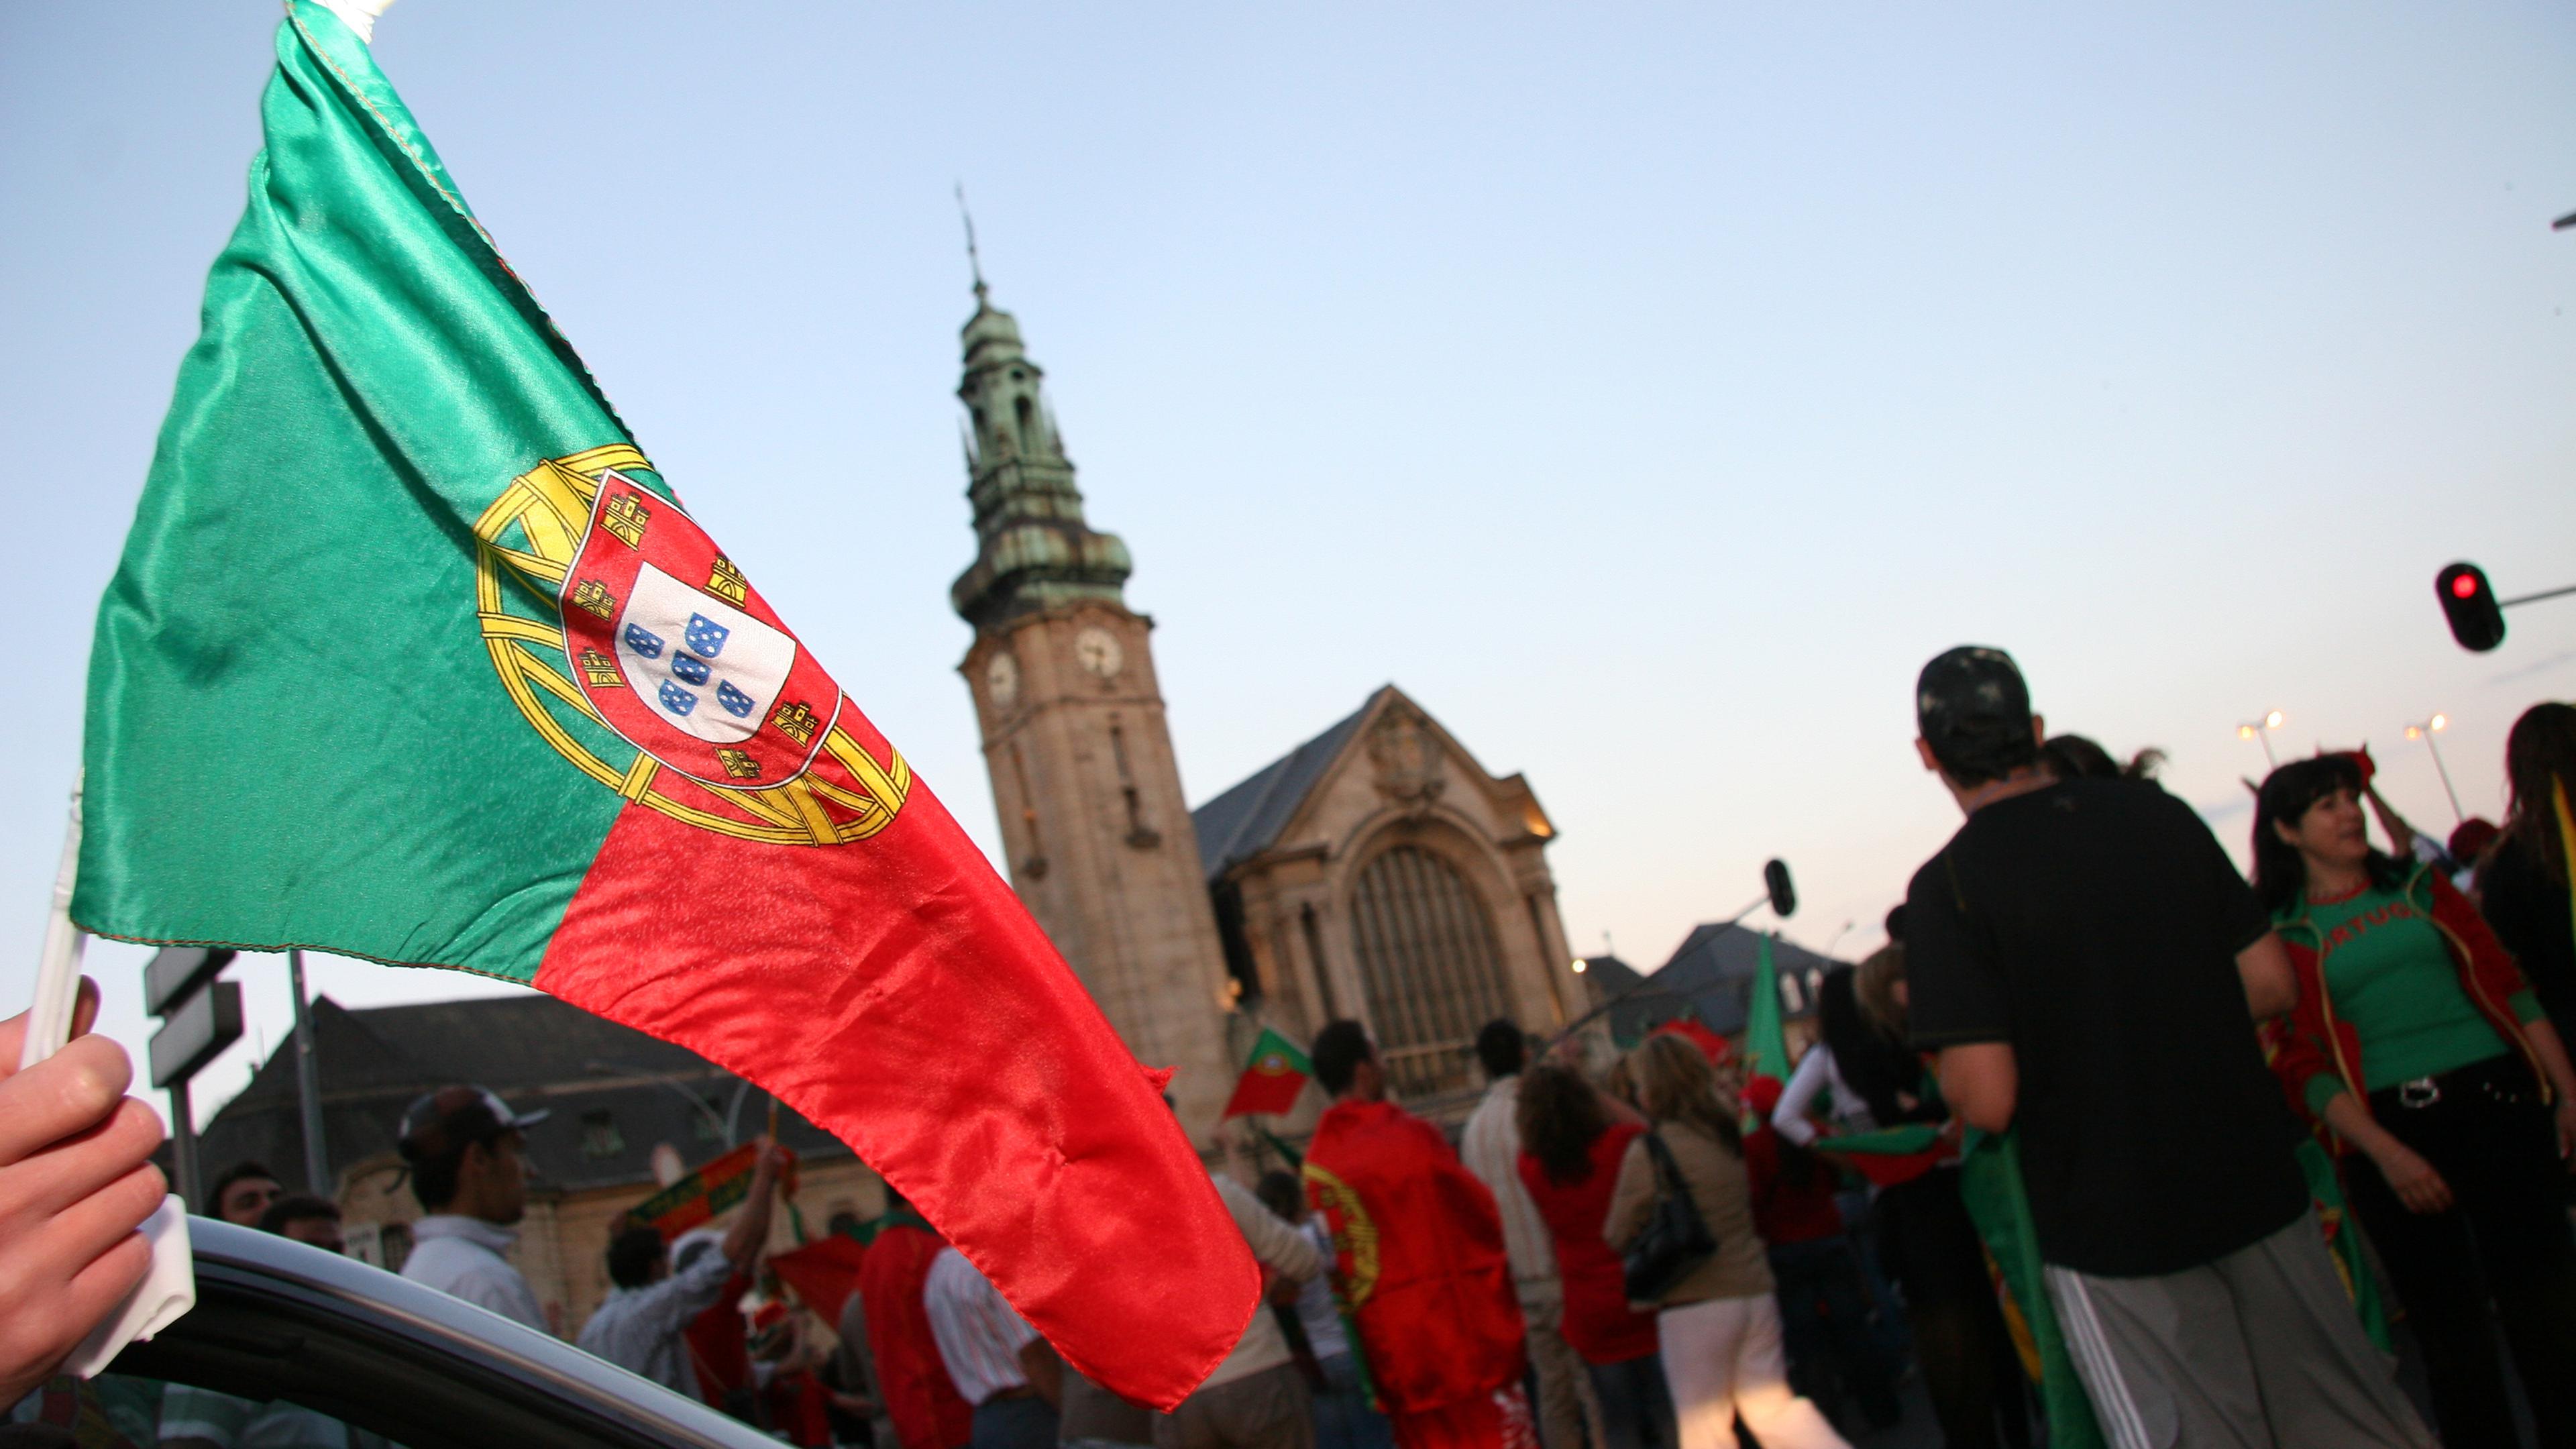 A comunidade portuguesa representa 11,3% da população total do país.